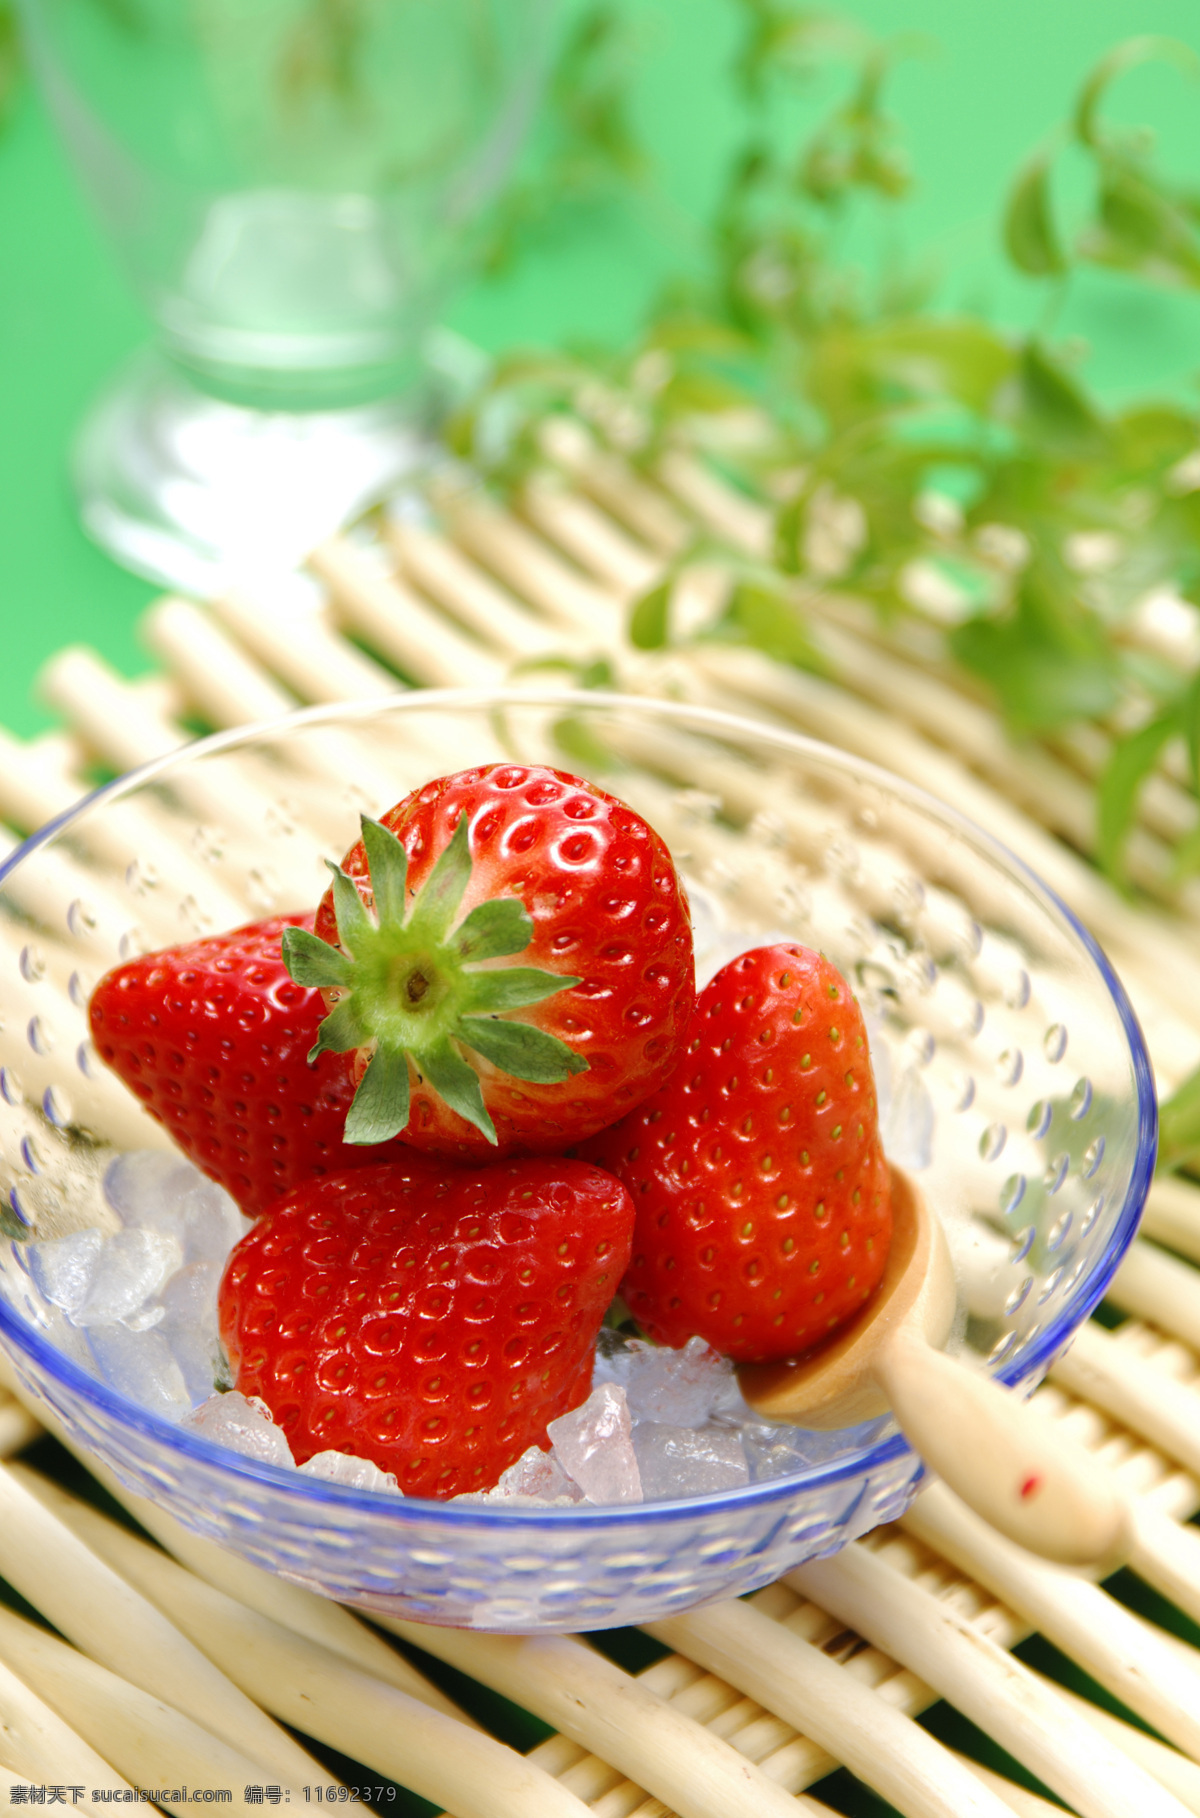 草莓078 草莓 草莓图片 草莓素材 草莓高清图片 草莓图片素材 水果 水果蔬菜 餐饮美食 白色